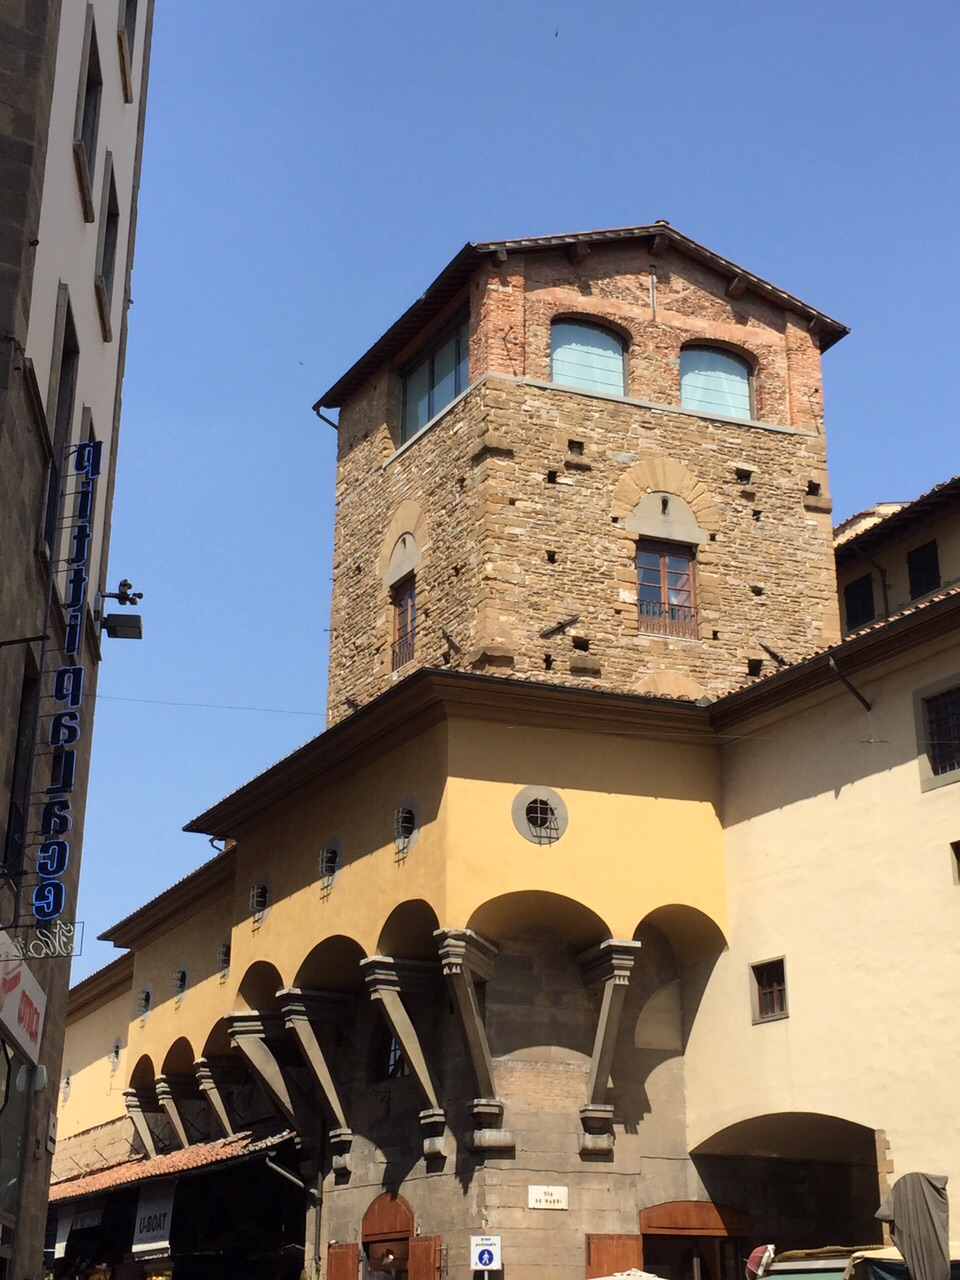 Vista exterior del corredor, adosado a los edificios de Florencia